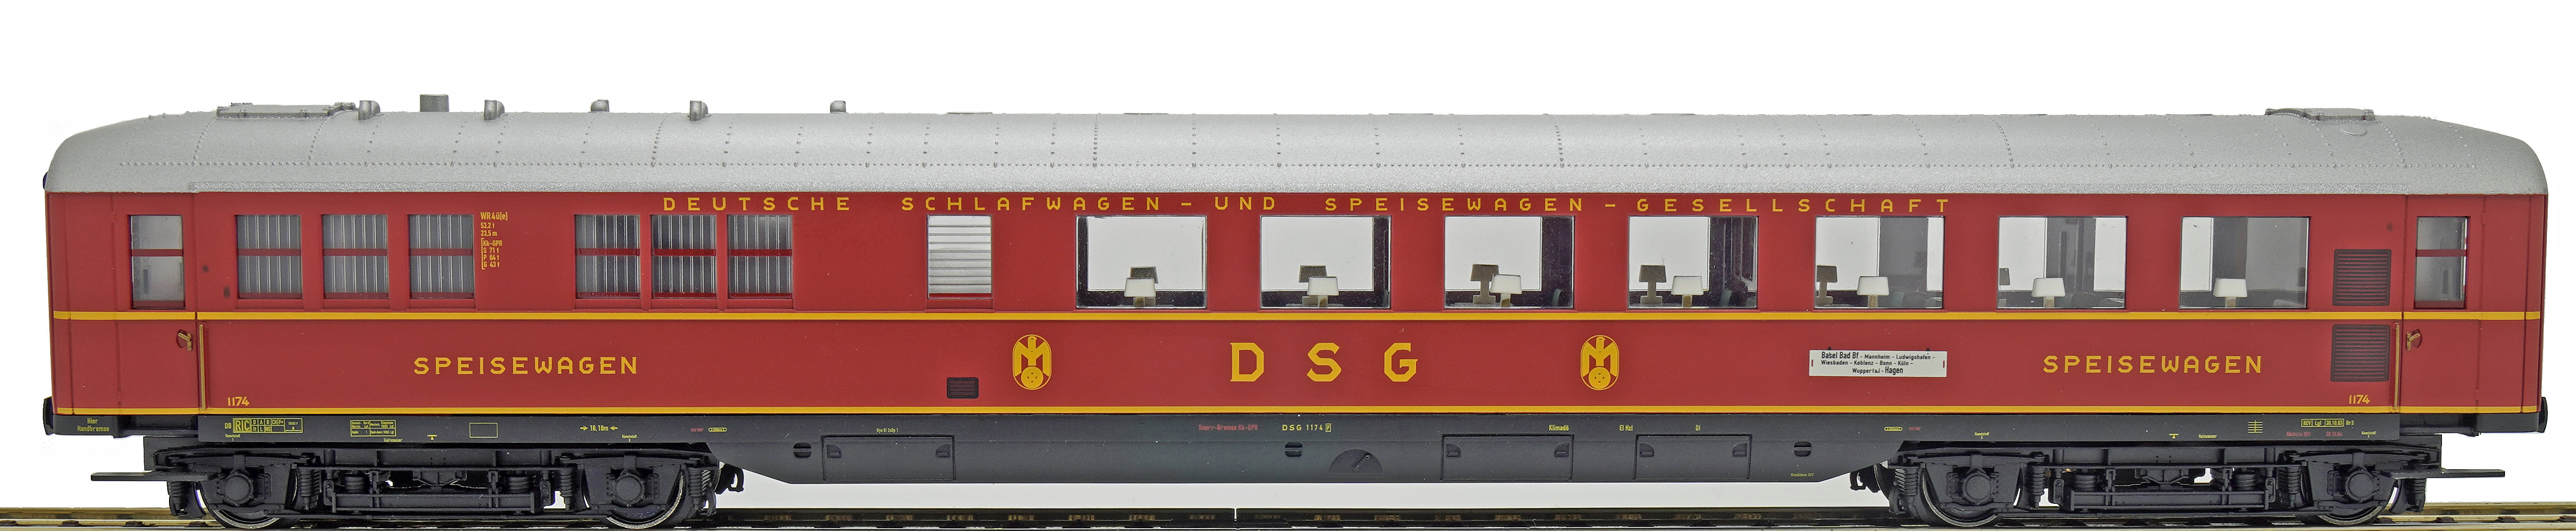 WR4üe-39 DSG 1174 TRIX/MÄRKLIN (Tischlampen nachträglich eingebaut)